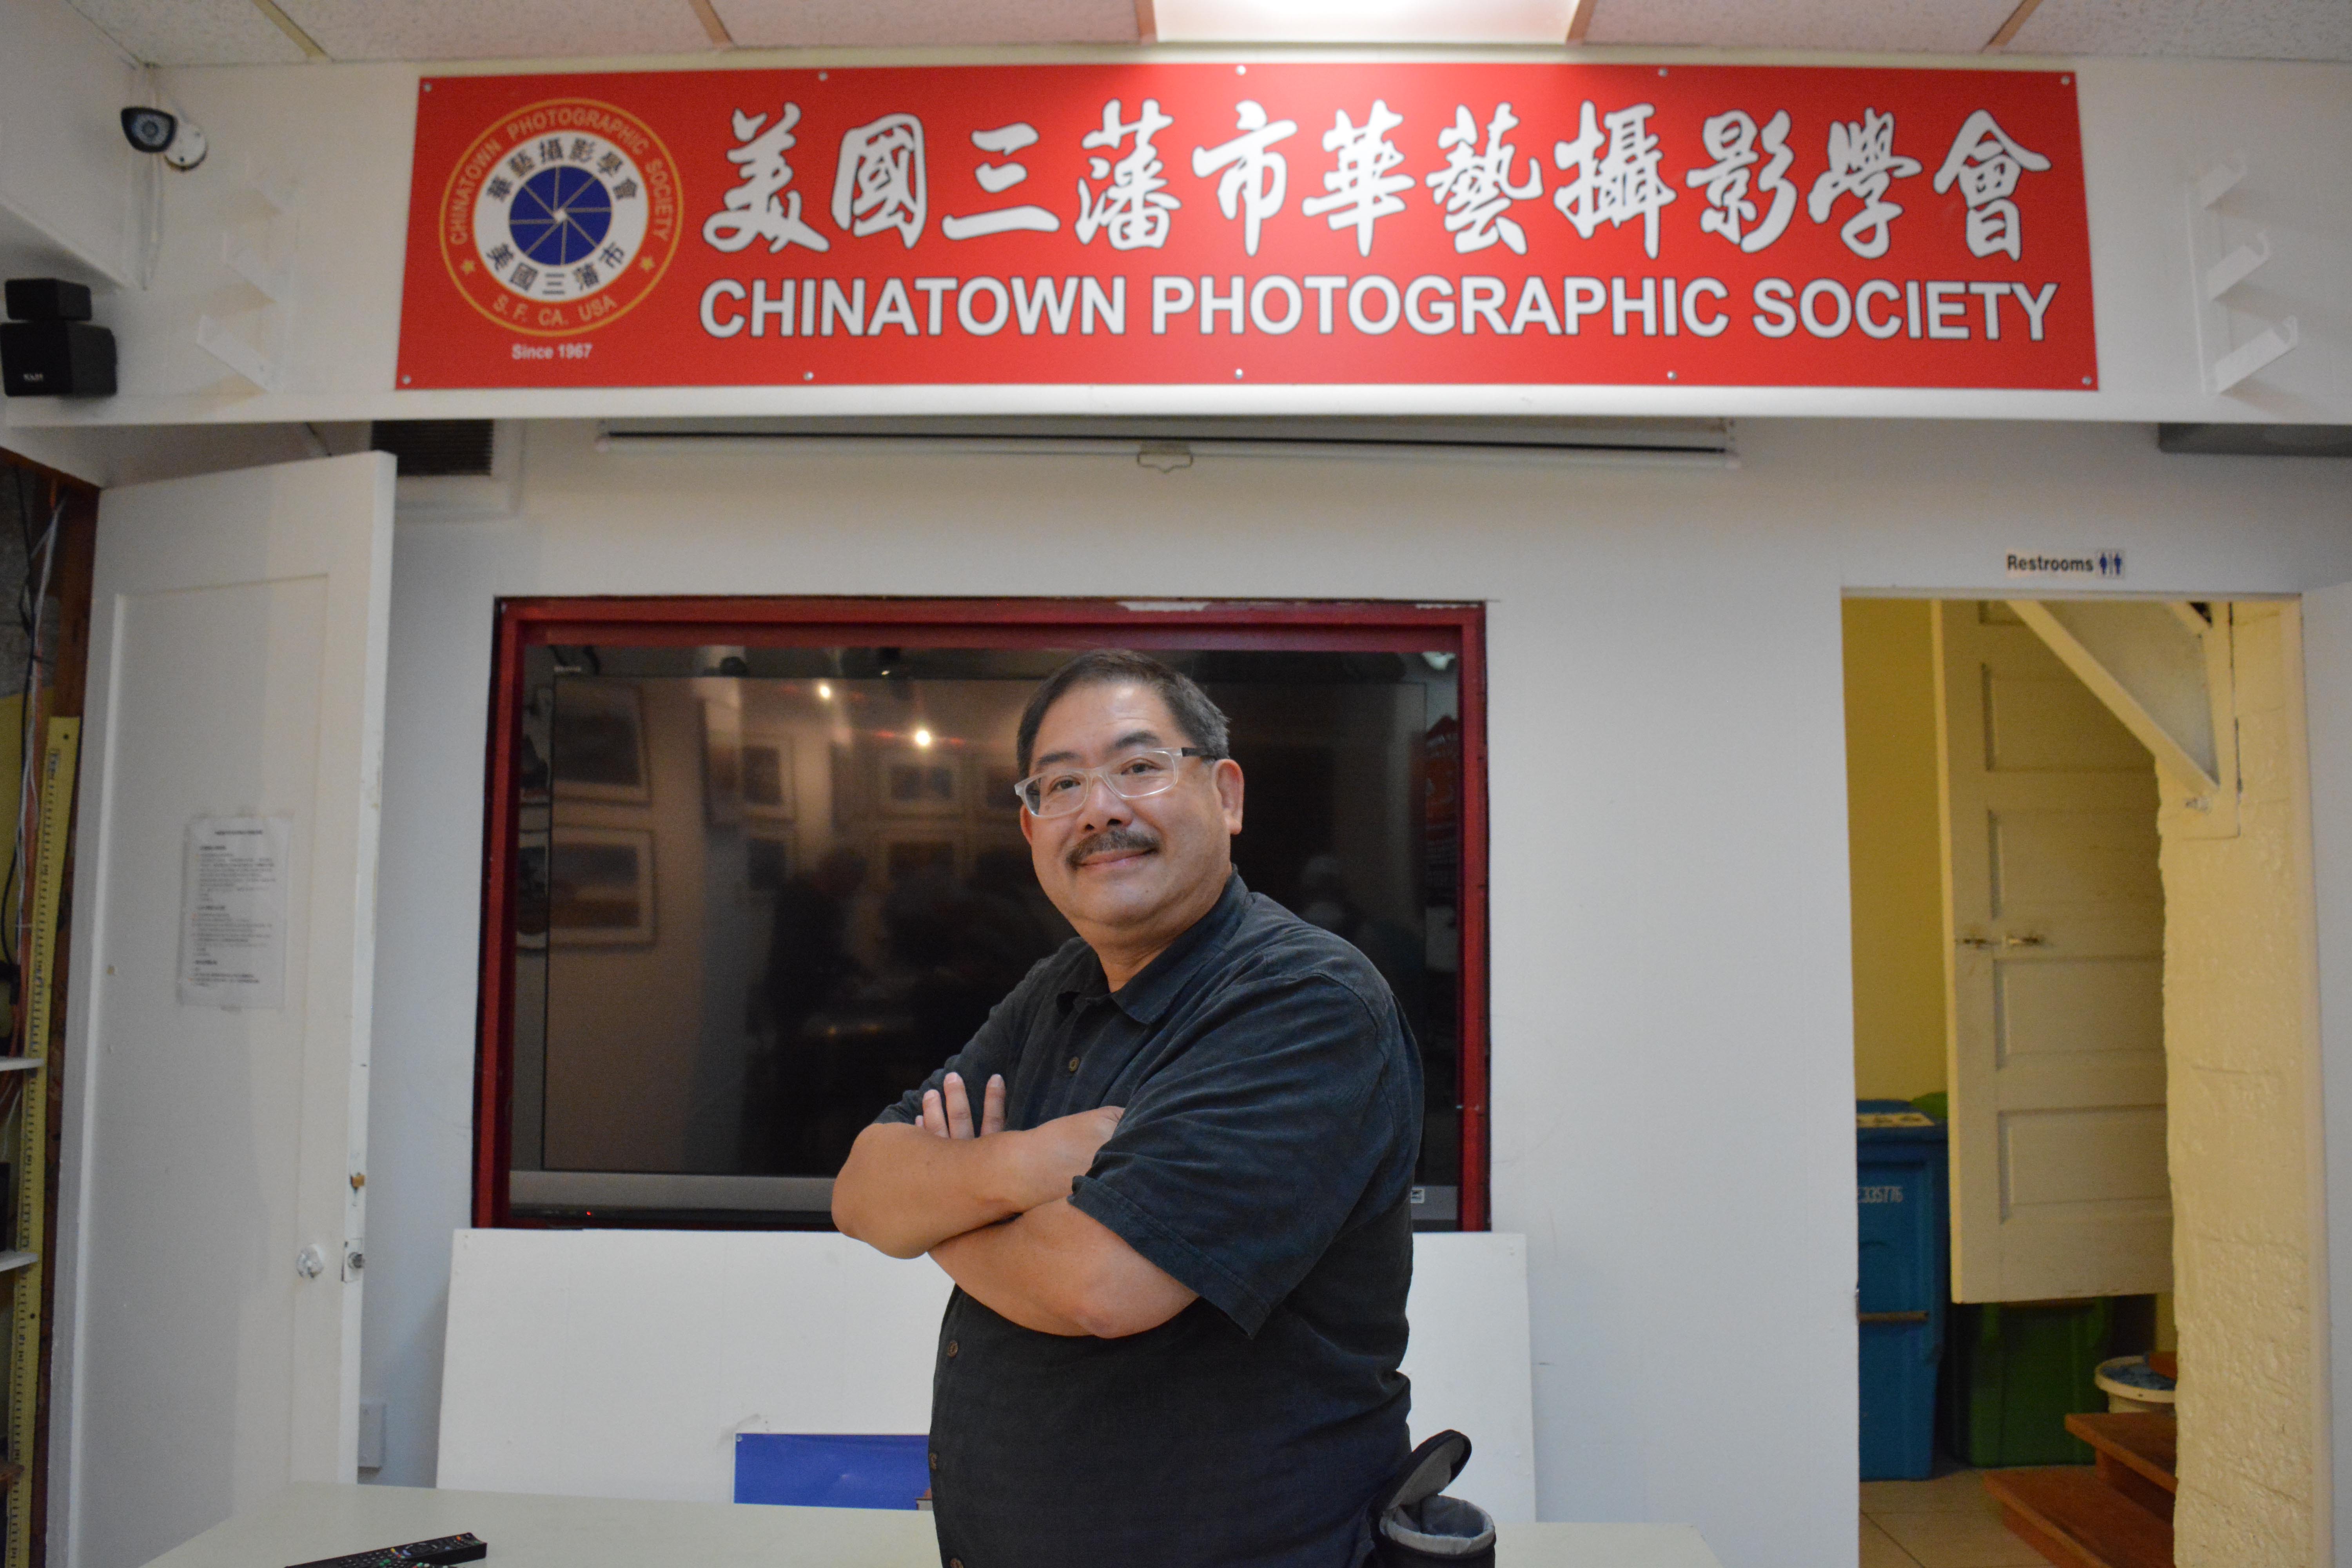 Frank Jang at the Chinatown Photographic Society in San Francisco. 